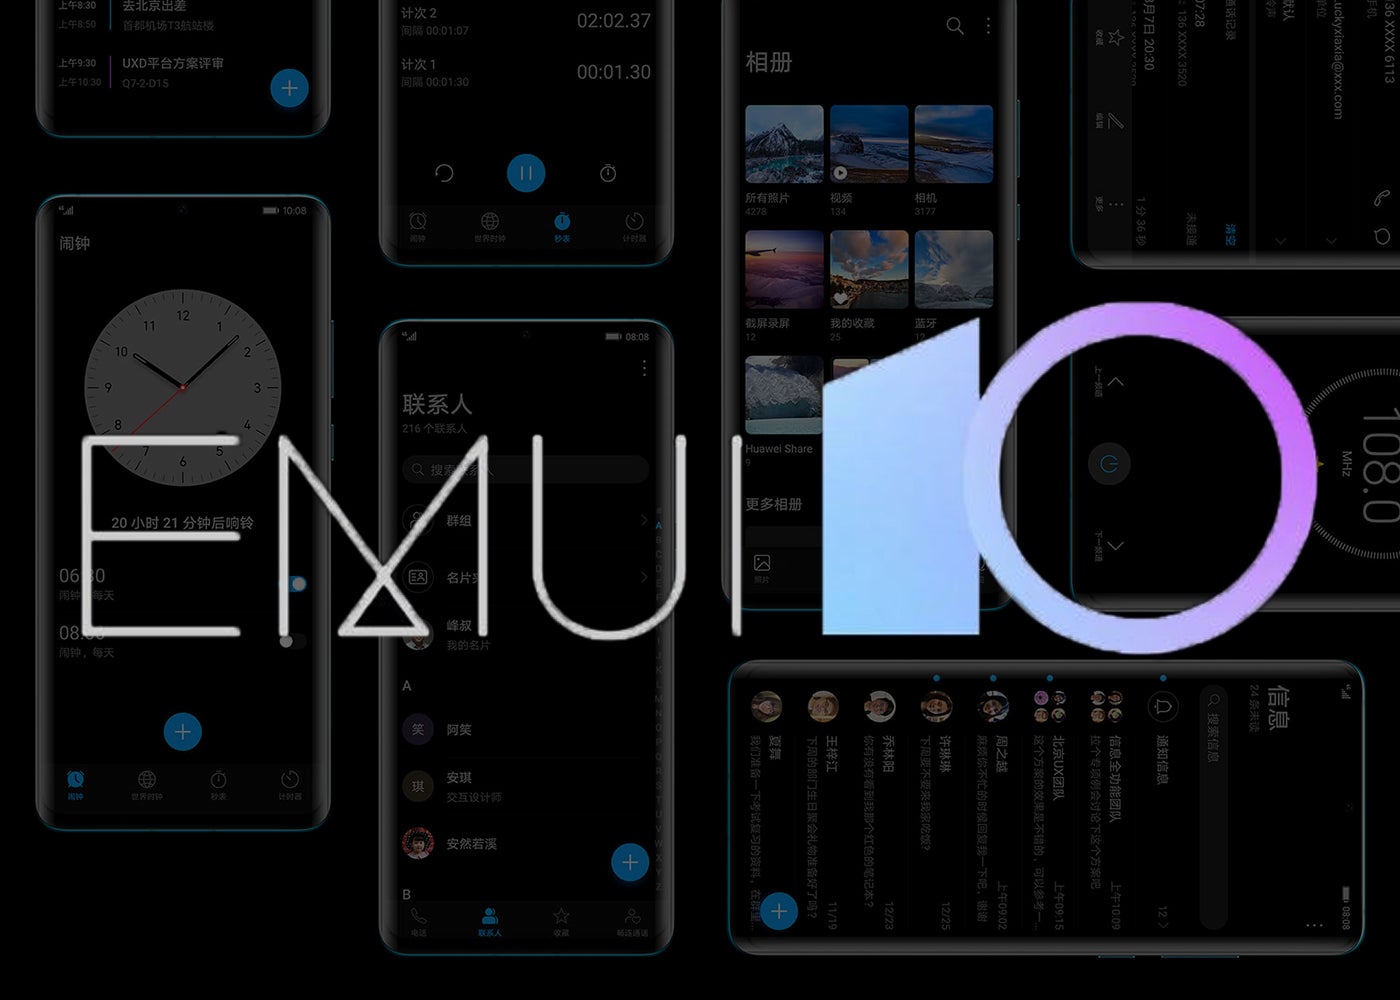 Oficial: estos son los teléfonos Huawei y Honor que actualizarán a EMUI 10 con Android Q. Noticias en tiempo real